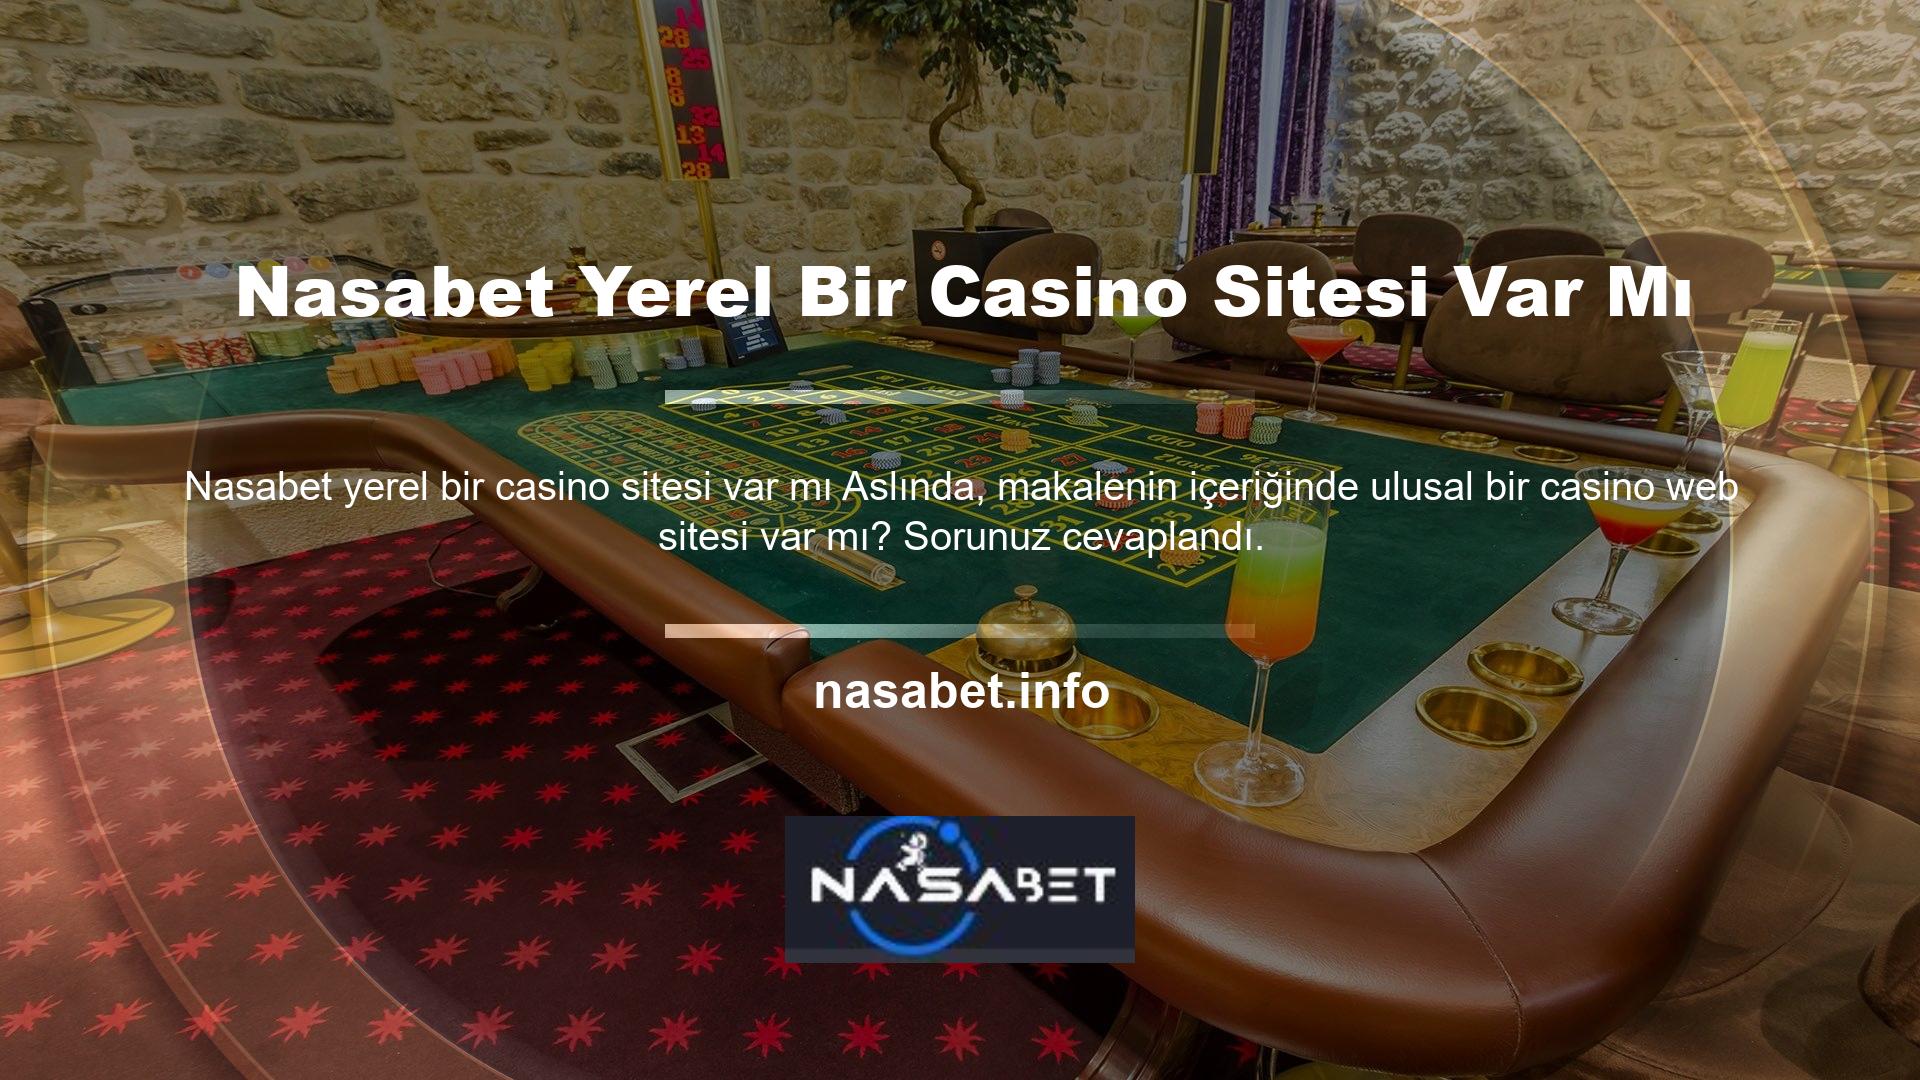 Türkiye'de para kazanmak için oyun oynayan yerel bir site oluşturmak imkansızdır